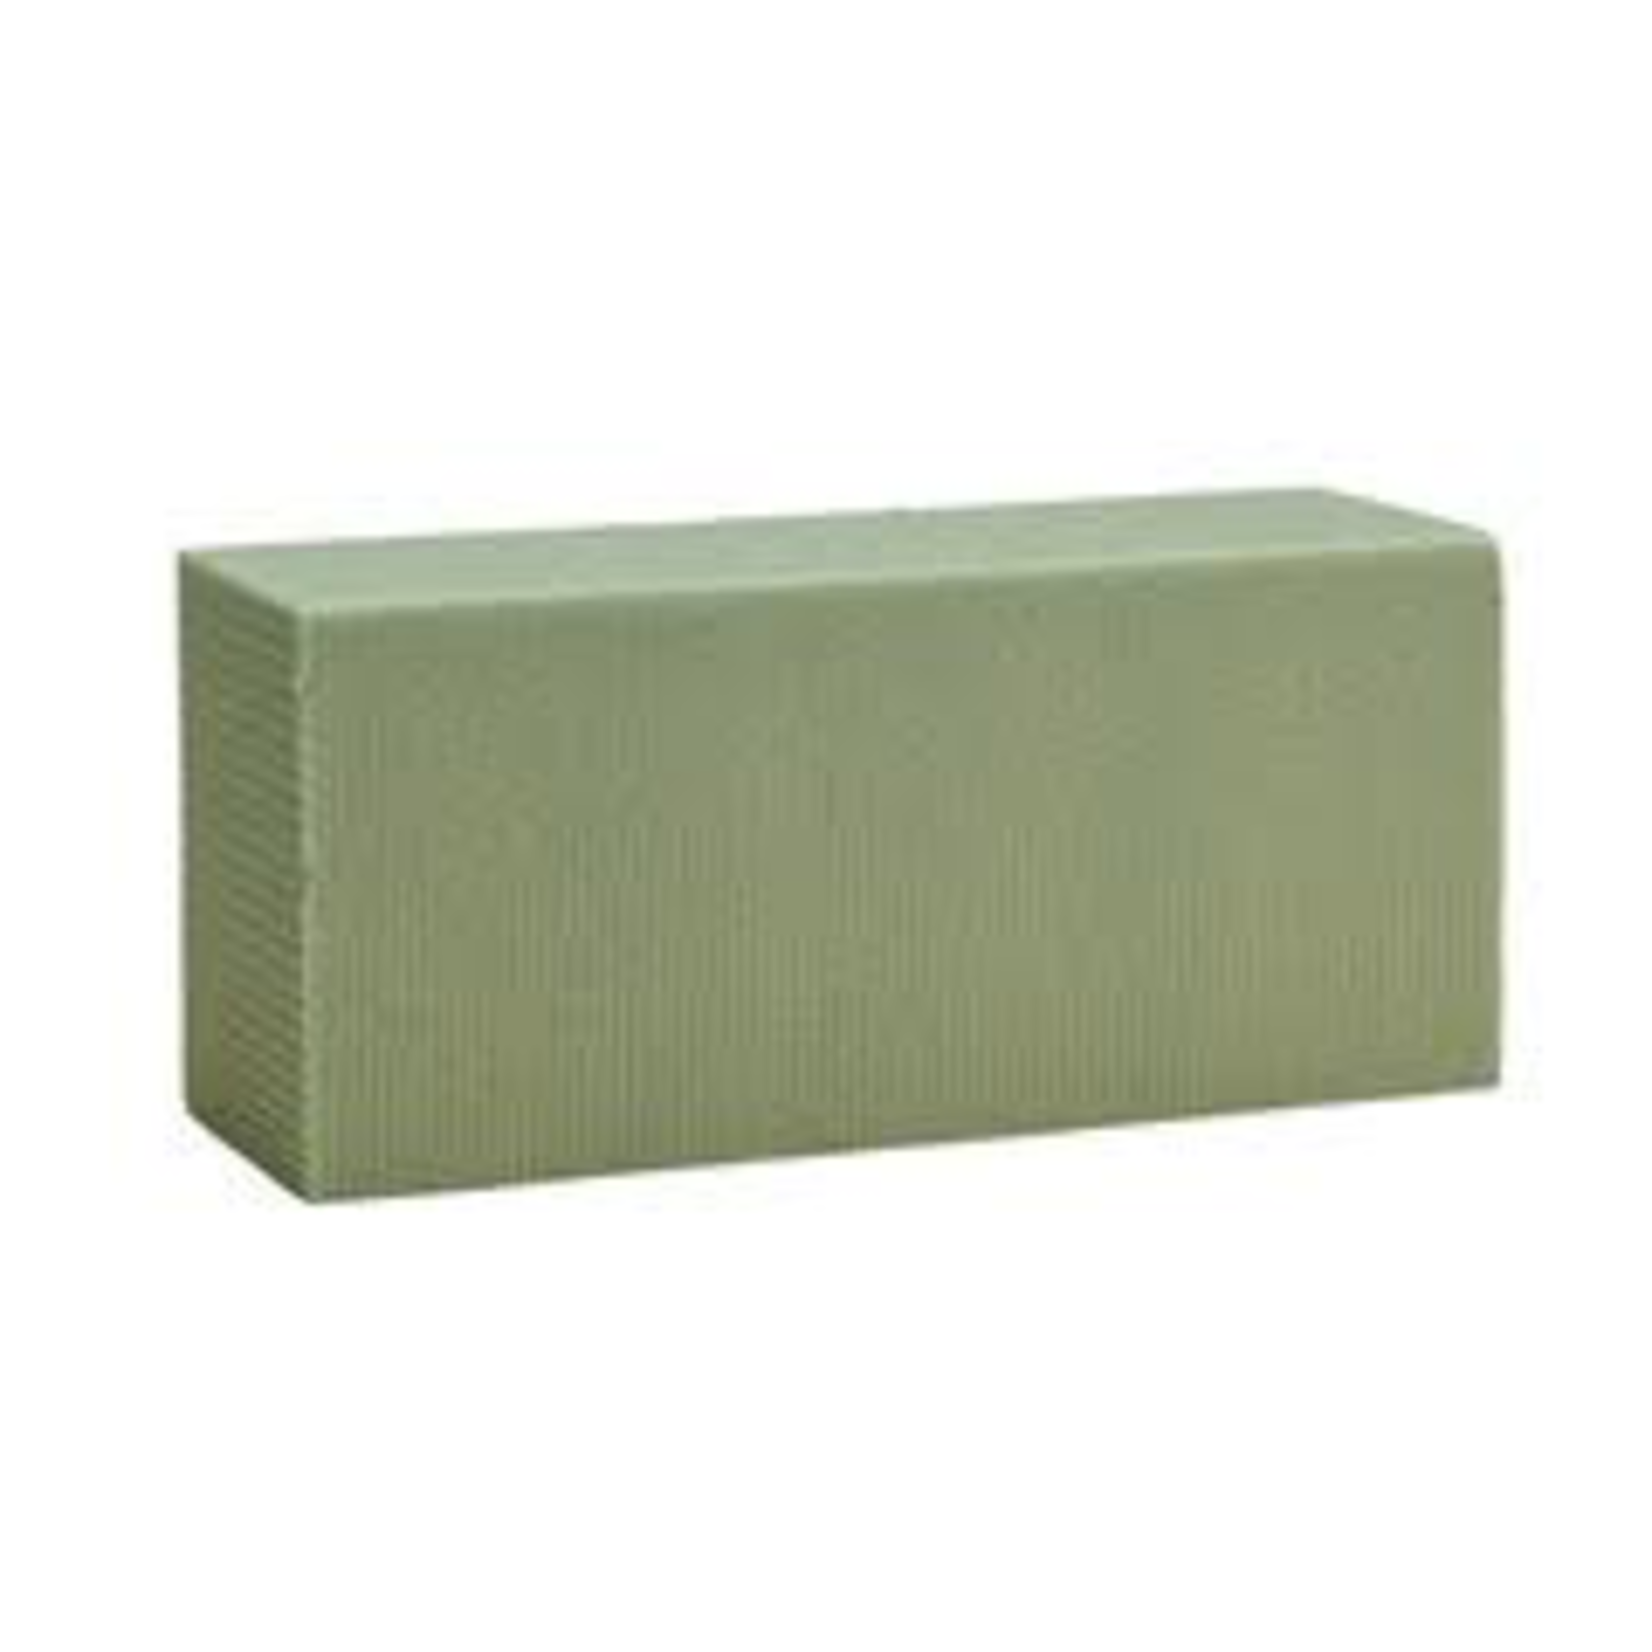 Block 2-5/8" x 3.5" x 8" Dry Foam Brick